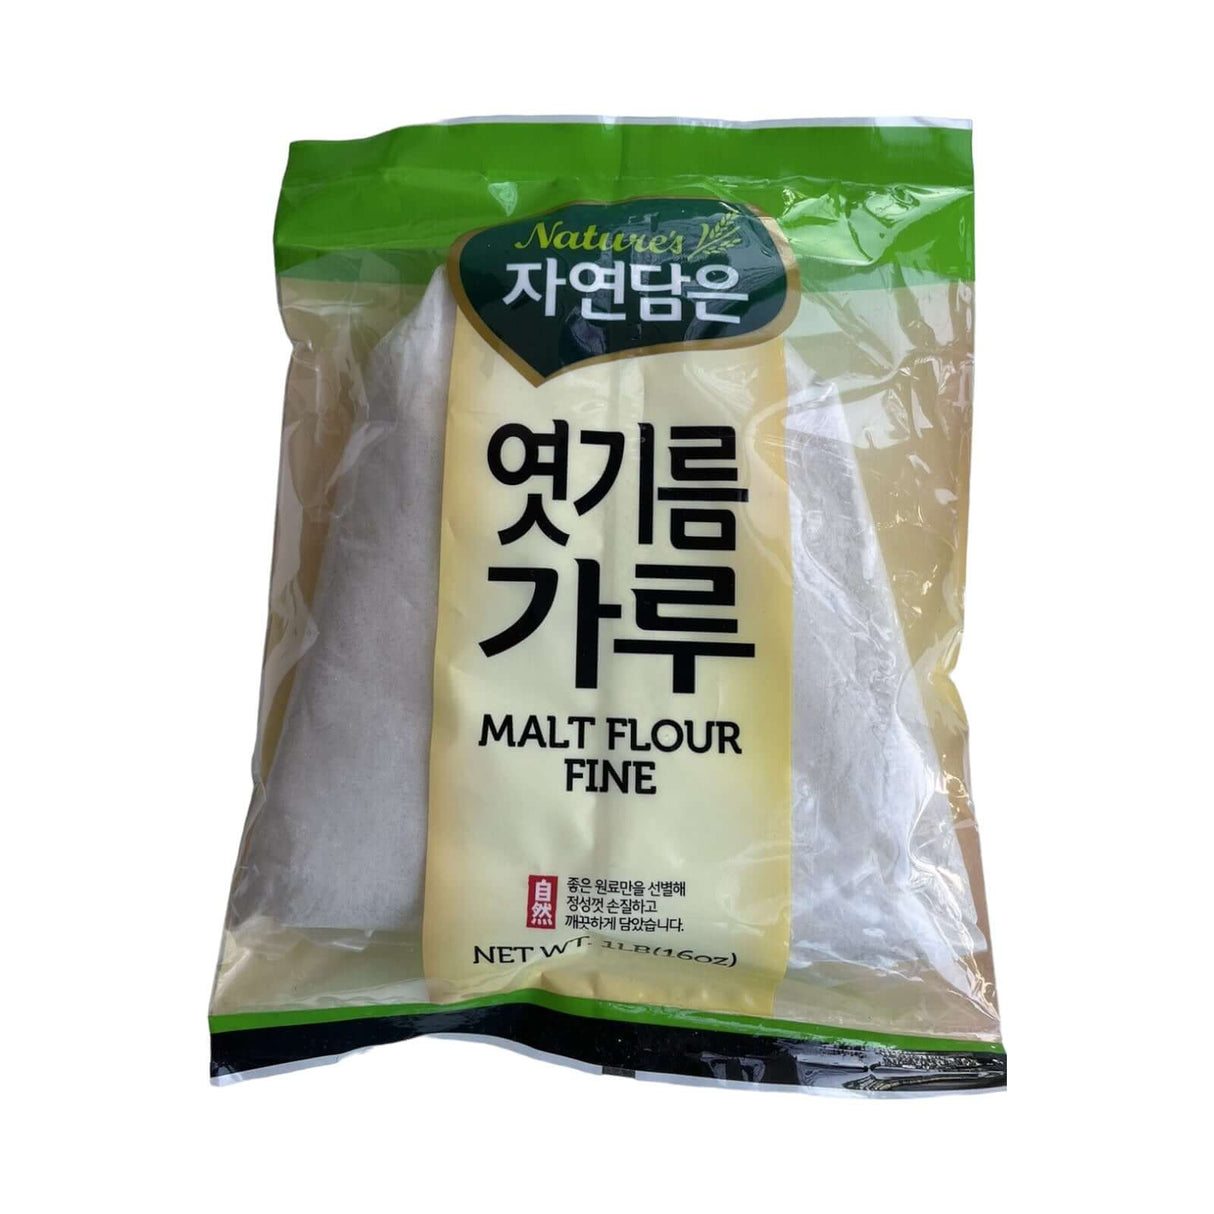 Nature Fine ground Malt Flour